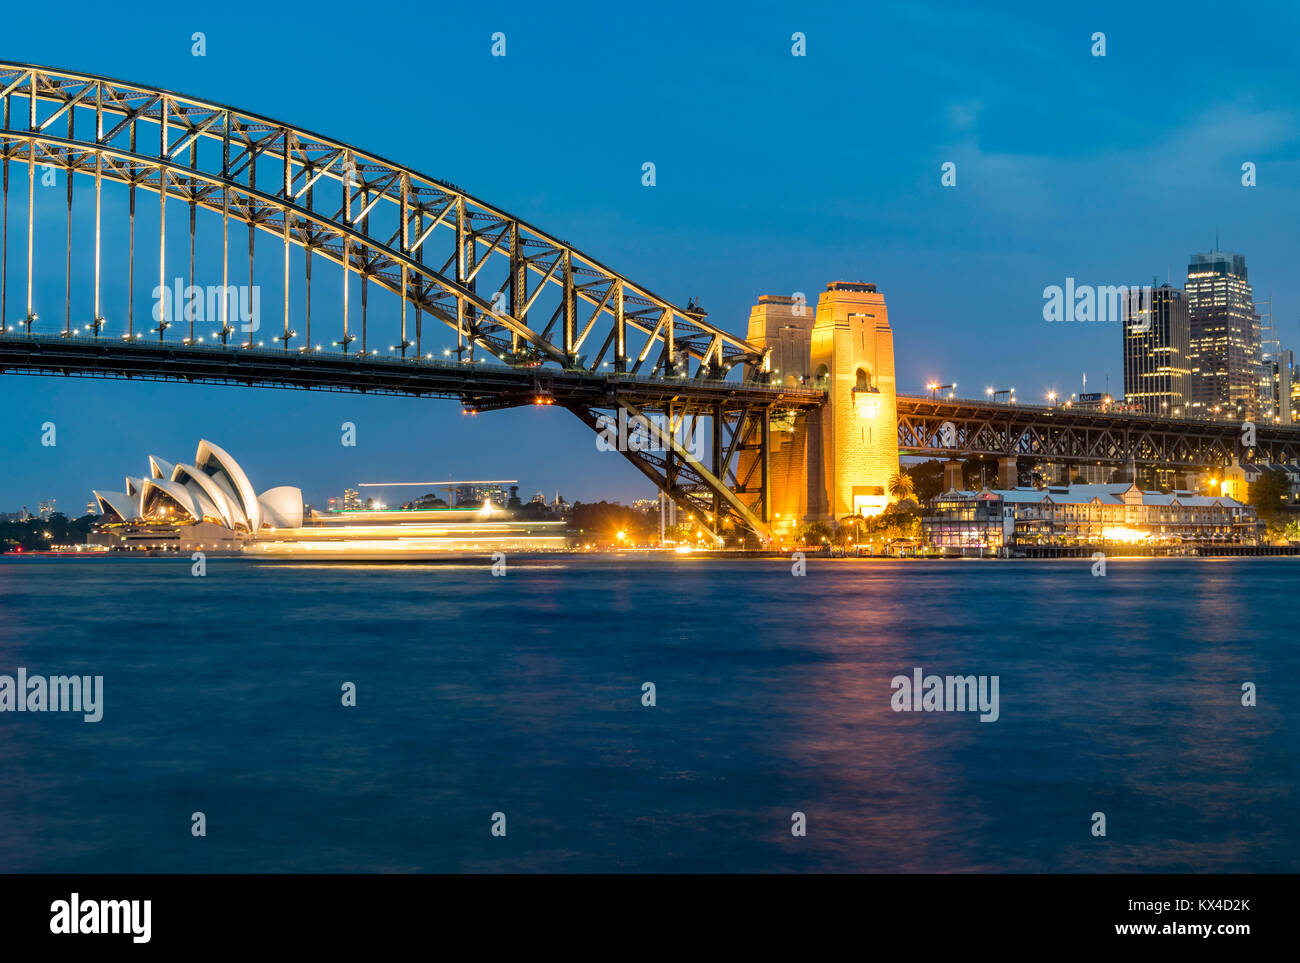 Nacht Panorama auf den Hafen von Sydney, Australien. Stadtbild bei Nacht, Sydney Harbour Bridge, Fähre verläuft vor der Oper. Stockfoto